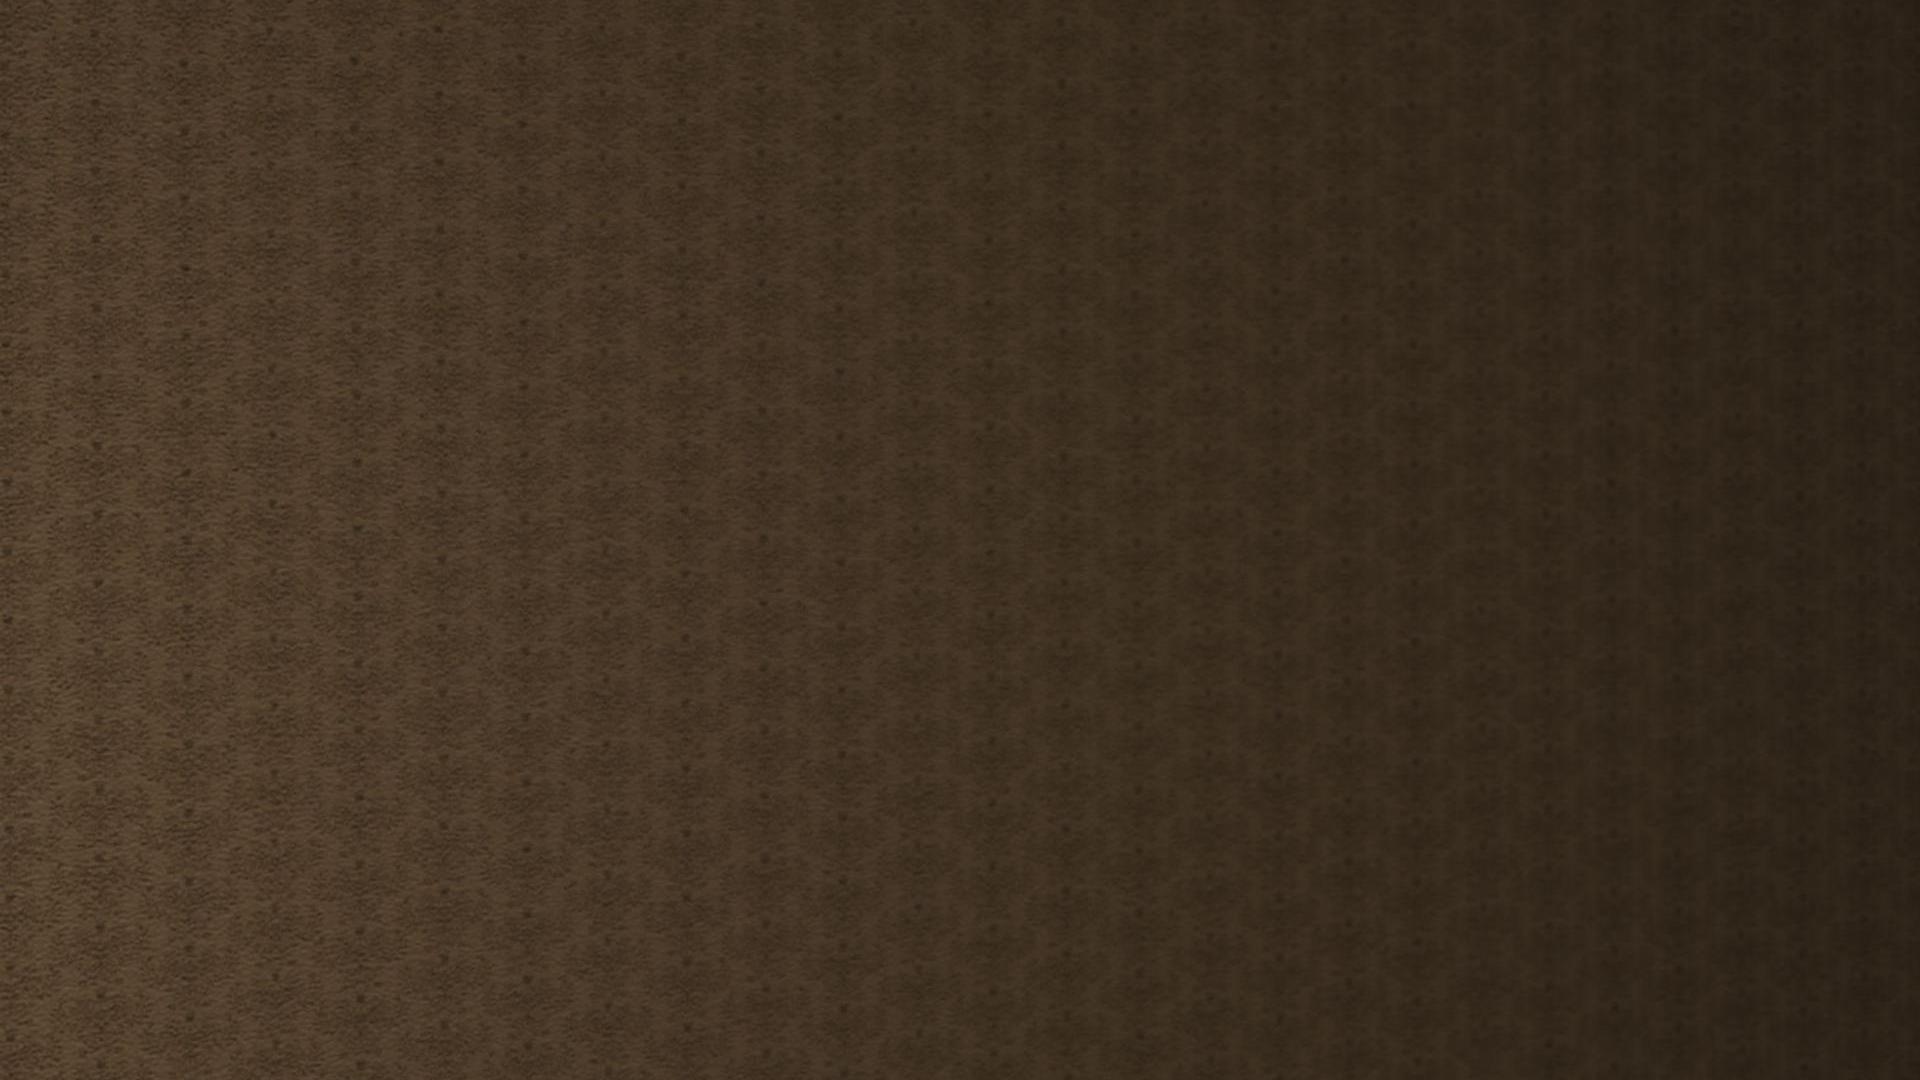 19201080 brown pattern wallpaper a brown pattern desktop wallpaper